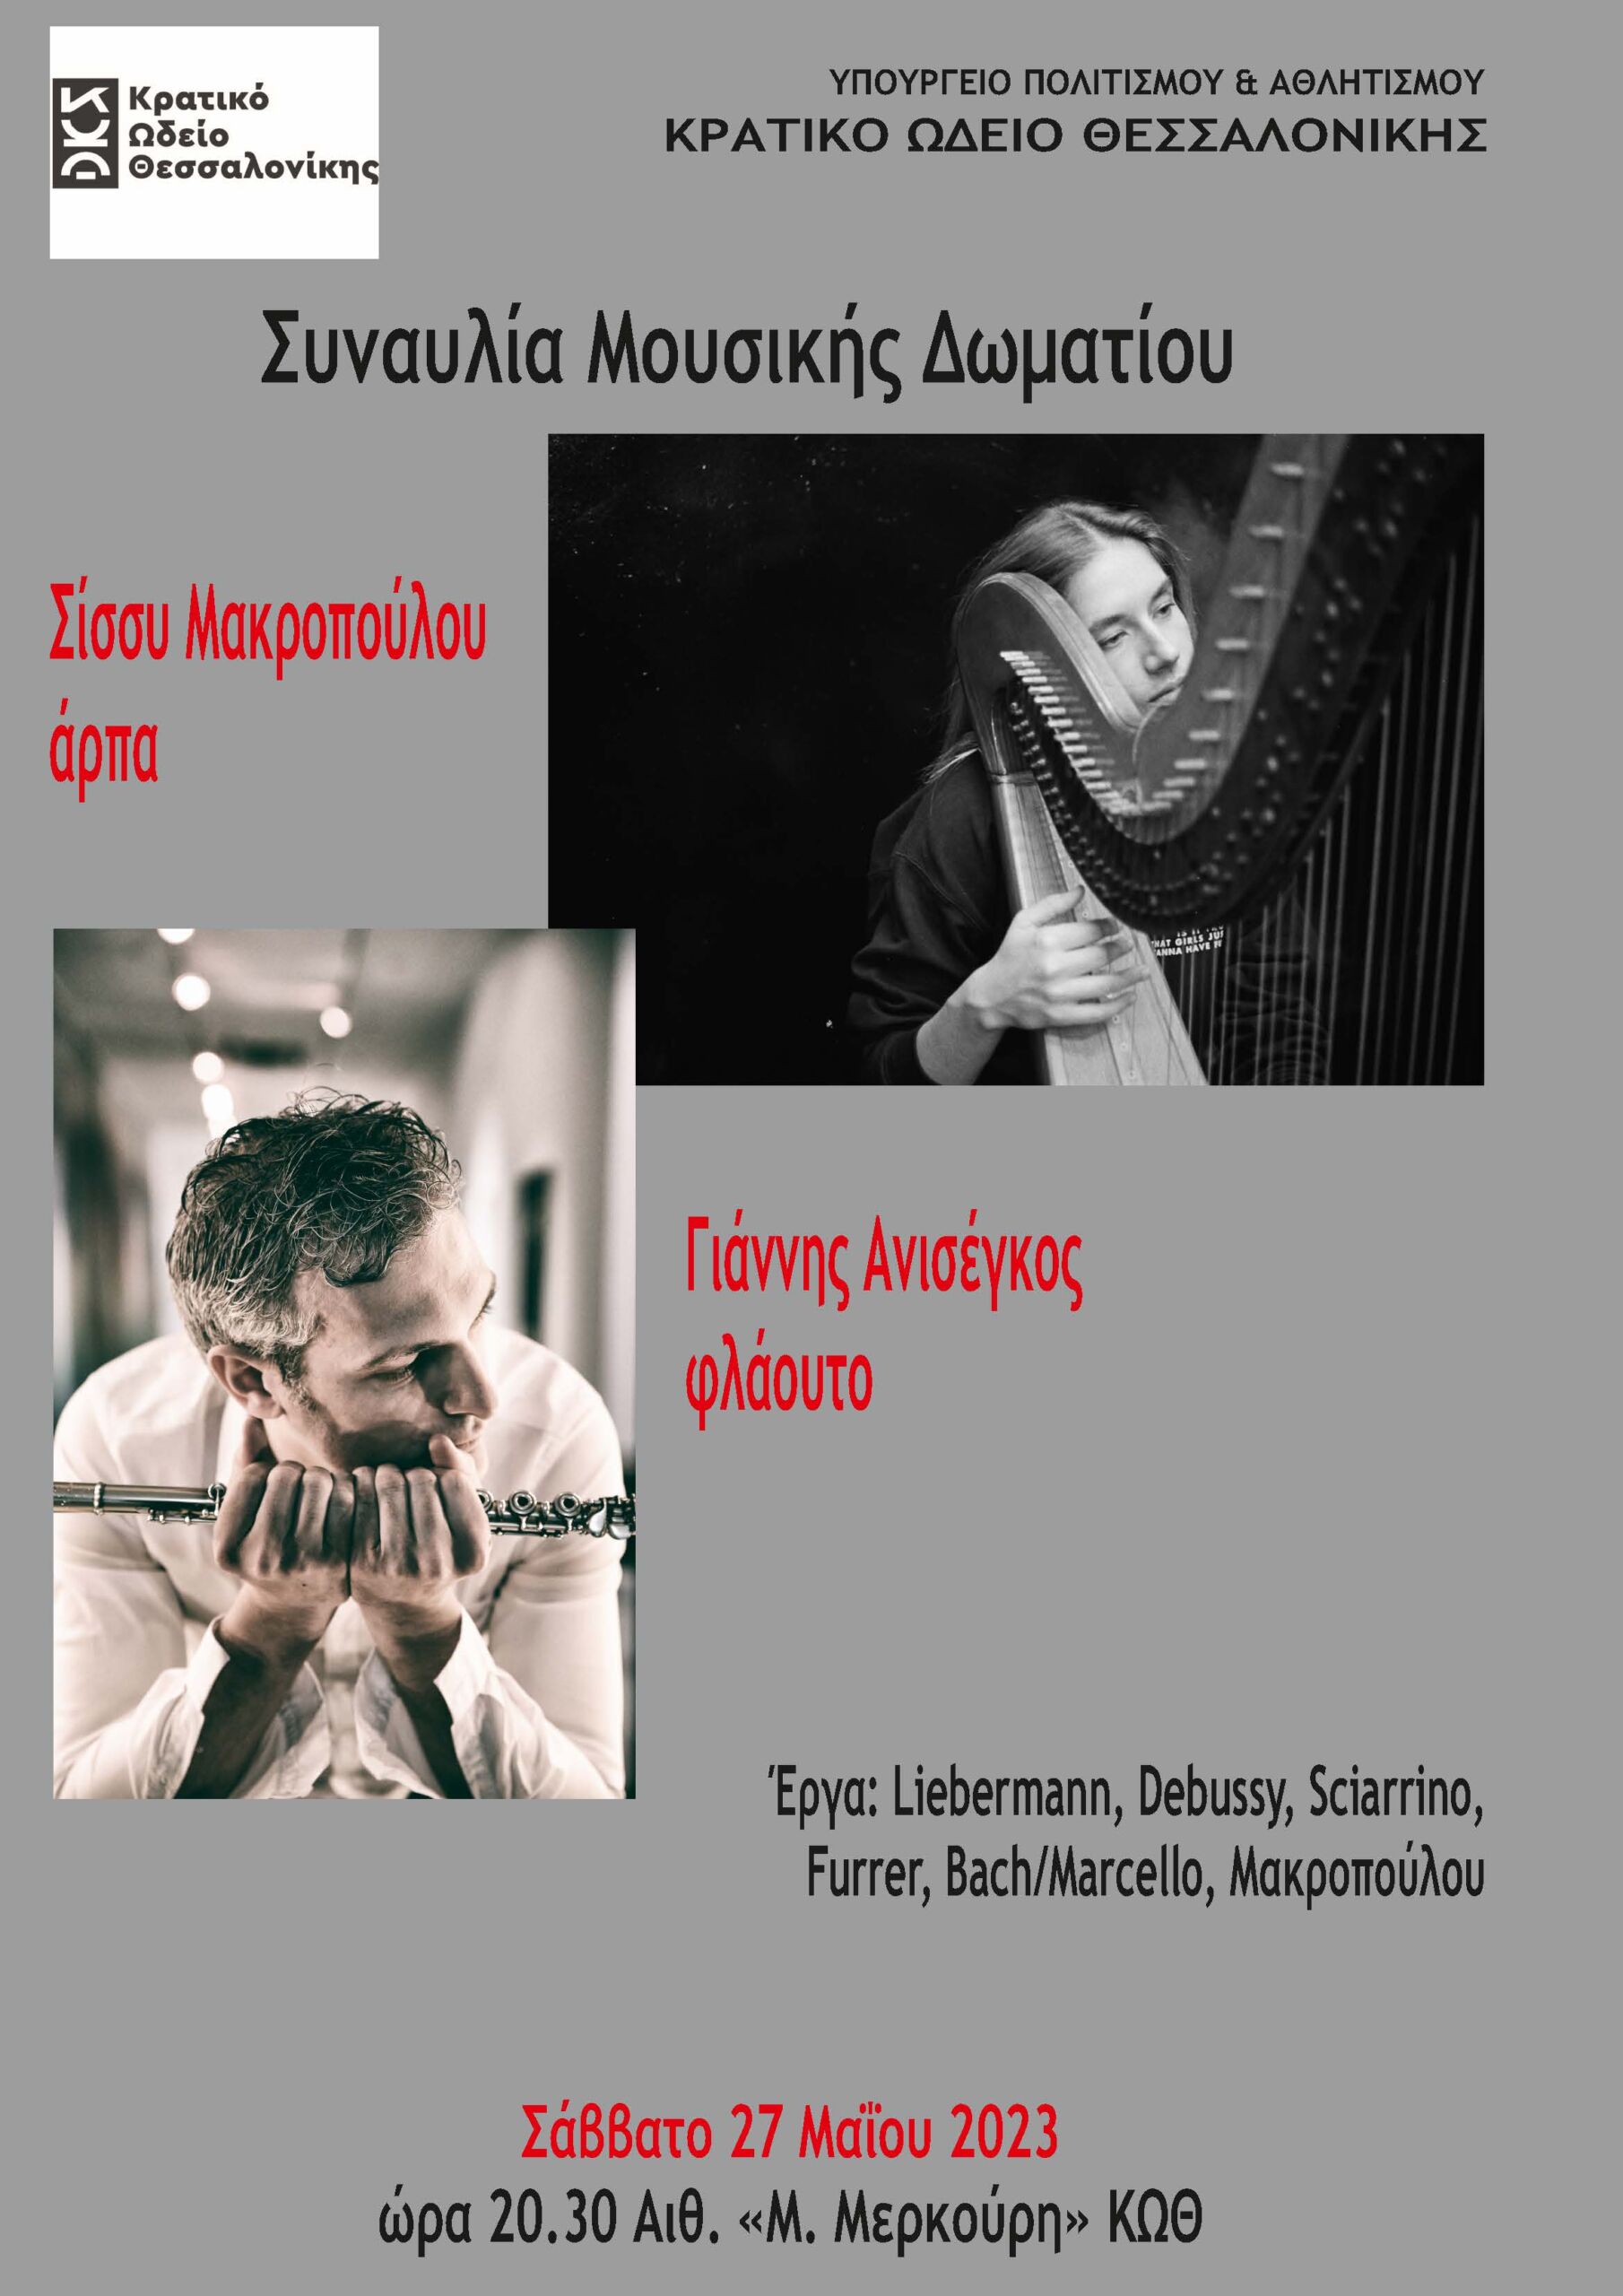 Συναυλία για φλάουτο και άρπα με τους Γιάννη Ανισέγκο και Σίσσυ Μακροπούλου